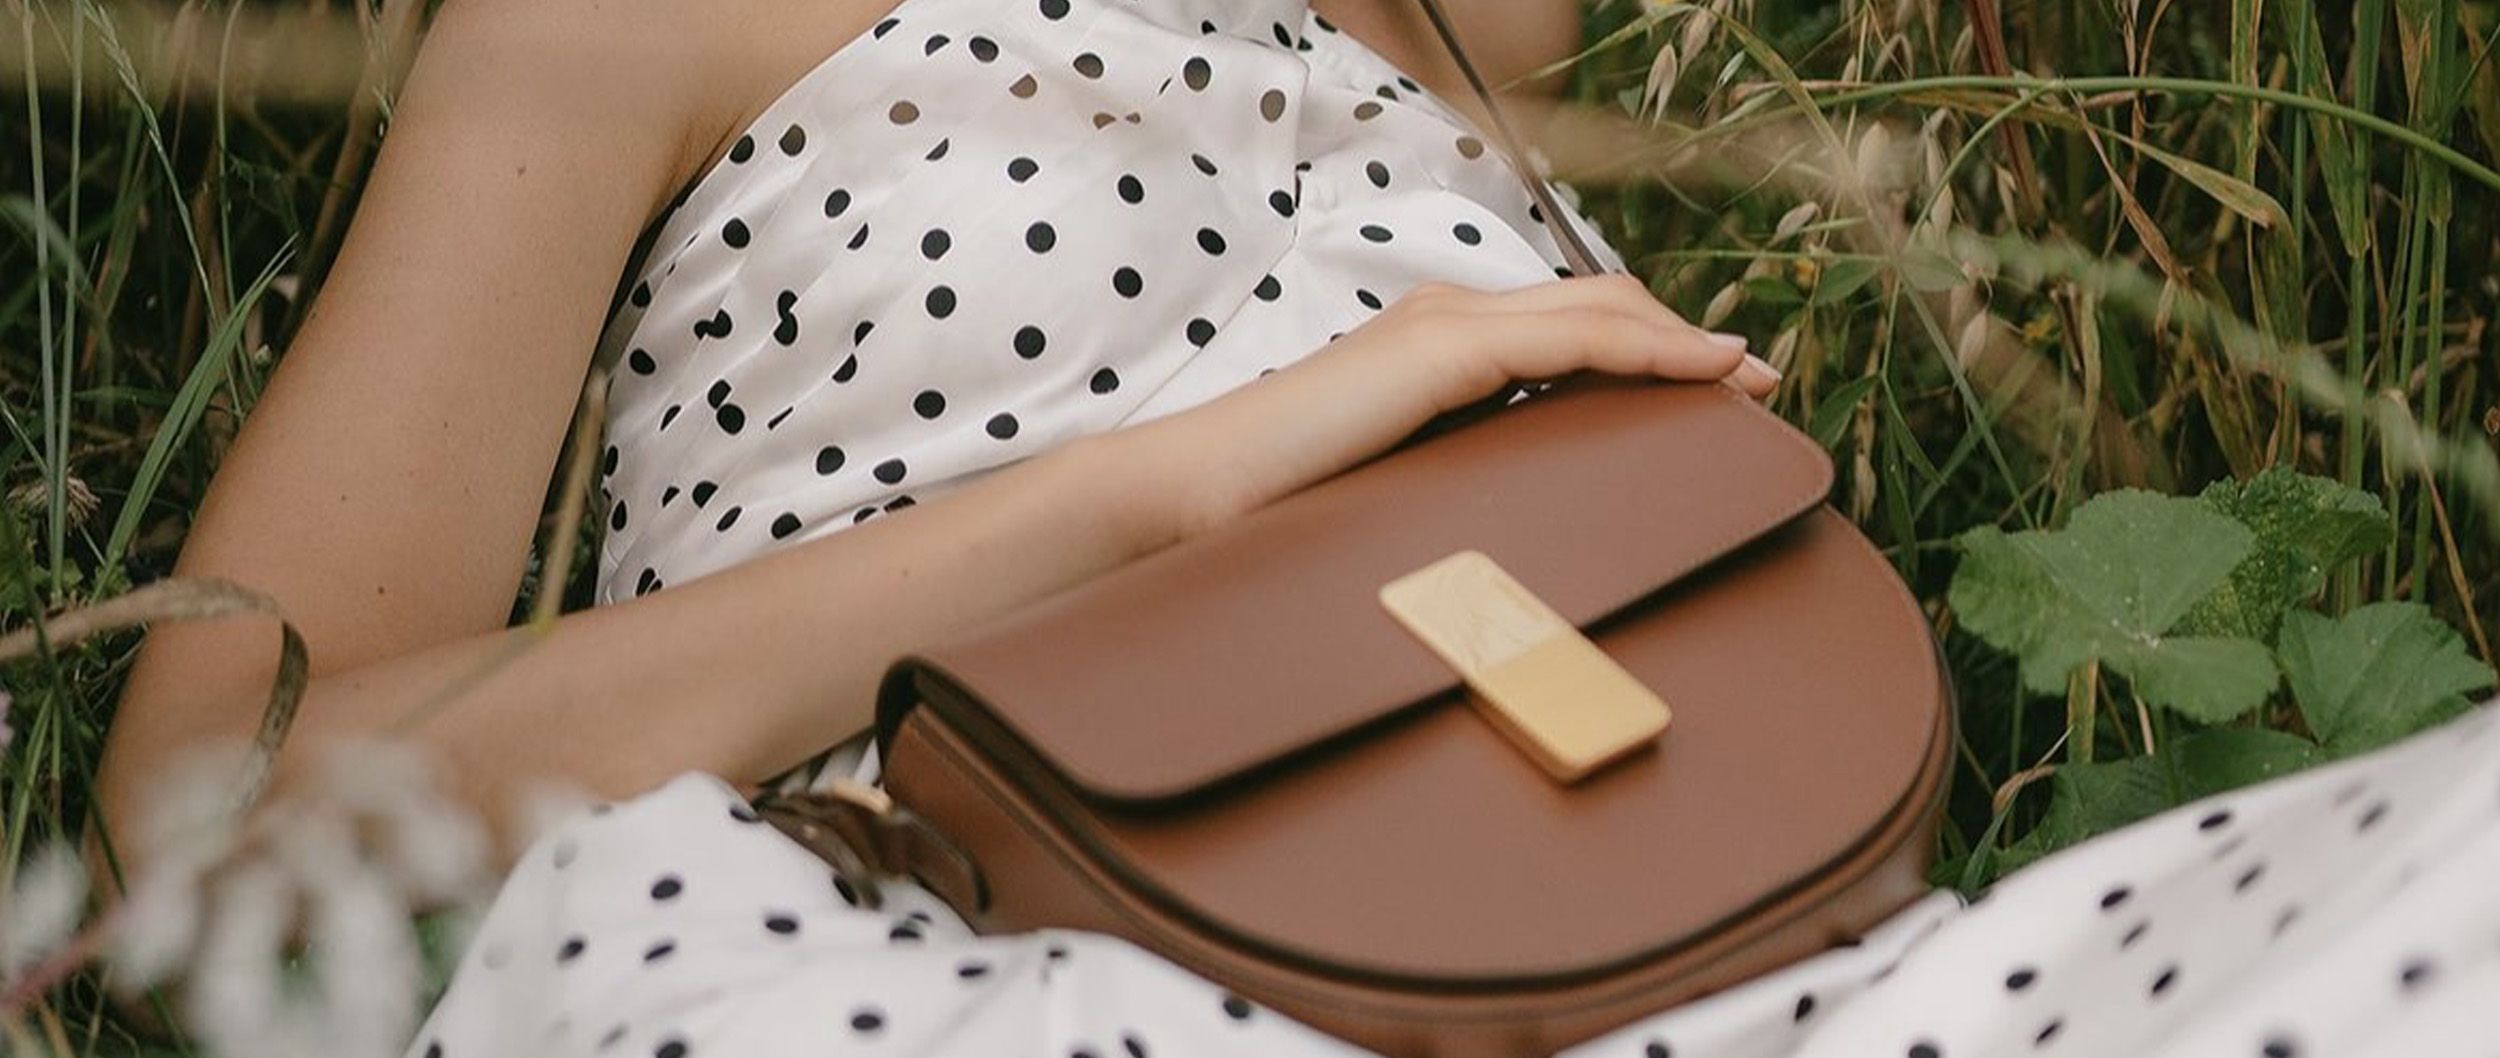 sac a main femme de marque women famous brands leather handbags